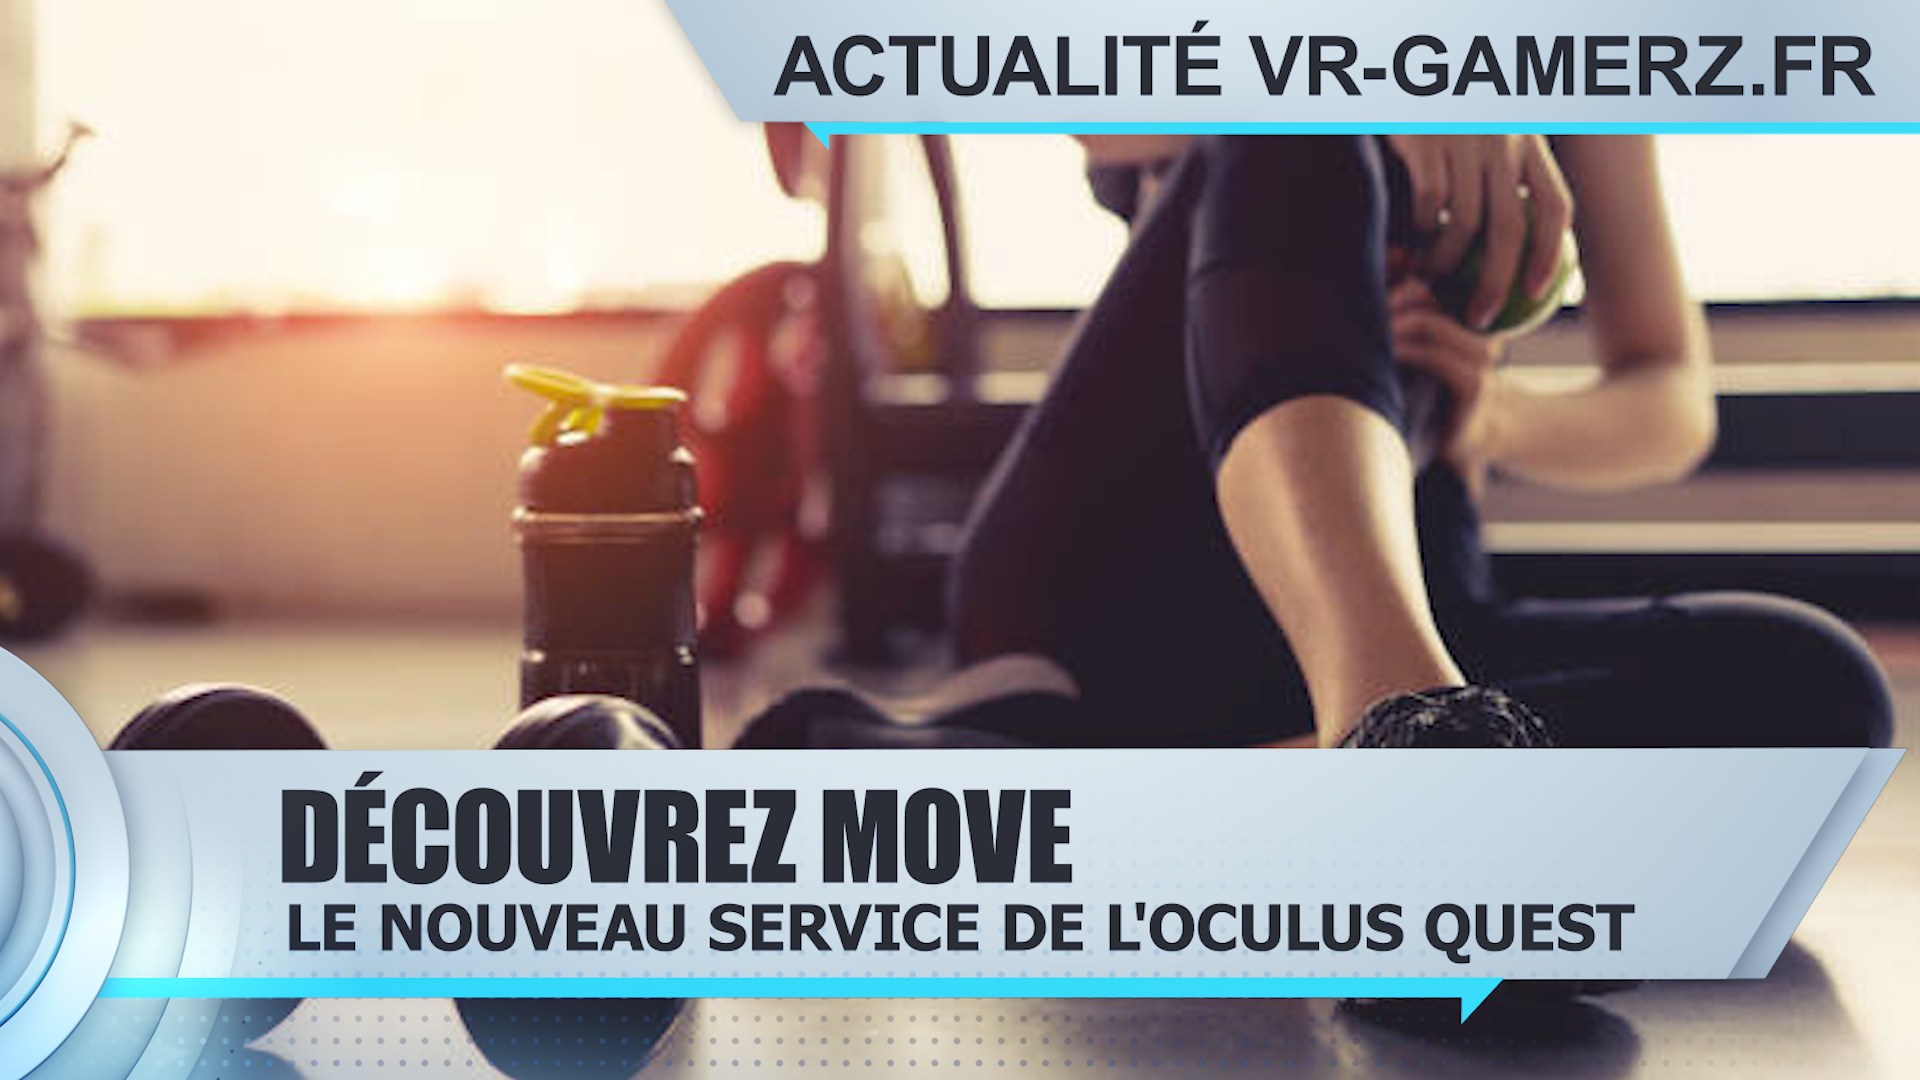 Move le nouveau service de suivi d’activité de l’Oculus quest